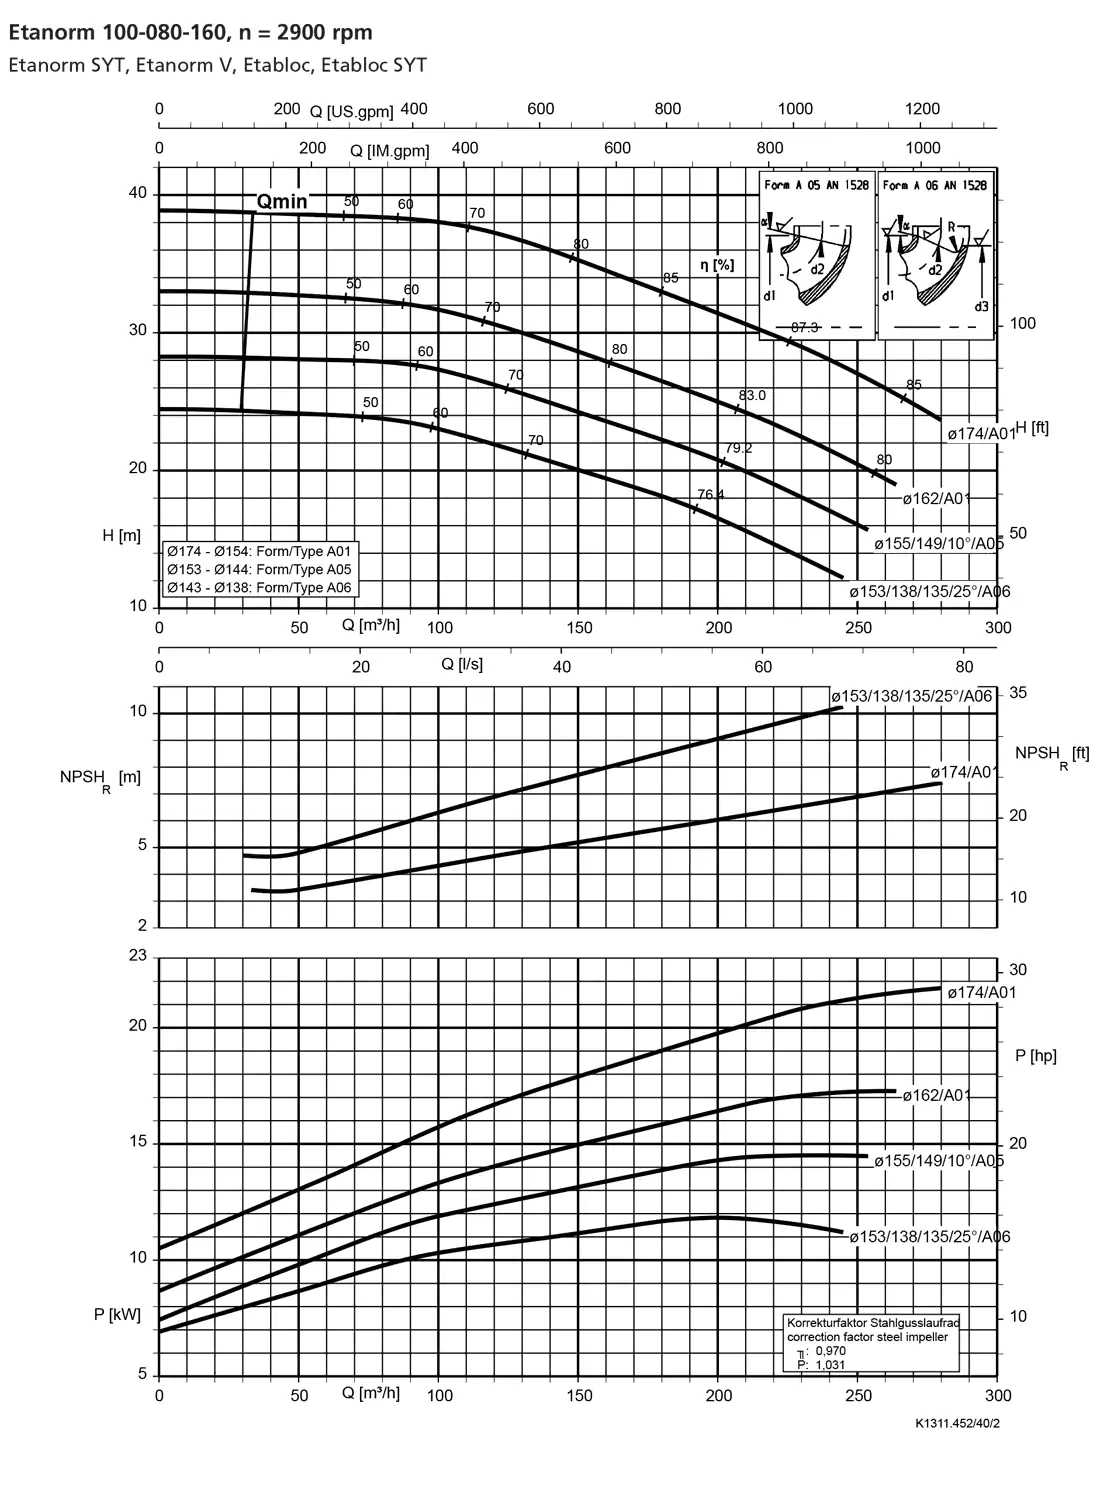 نمودار-کارکرد-پمپ-etanorm-100-80-160-2900